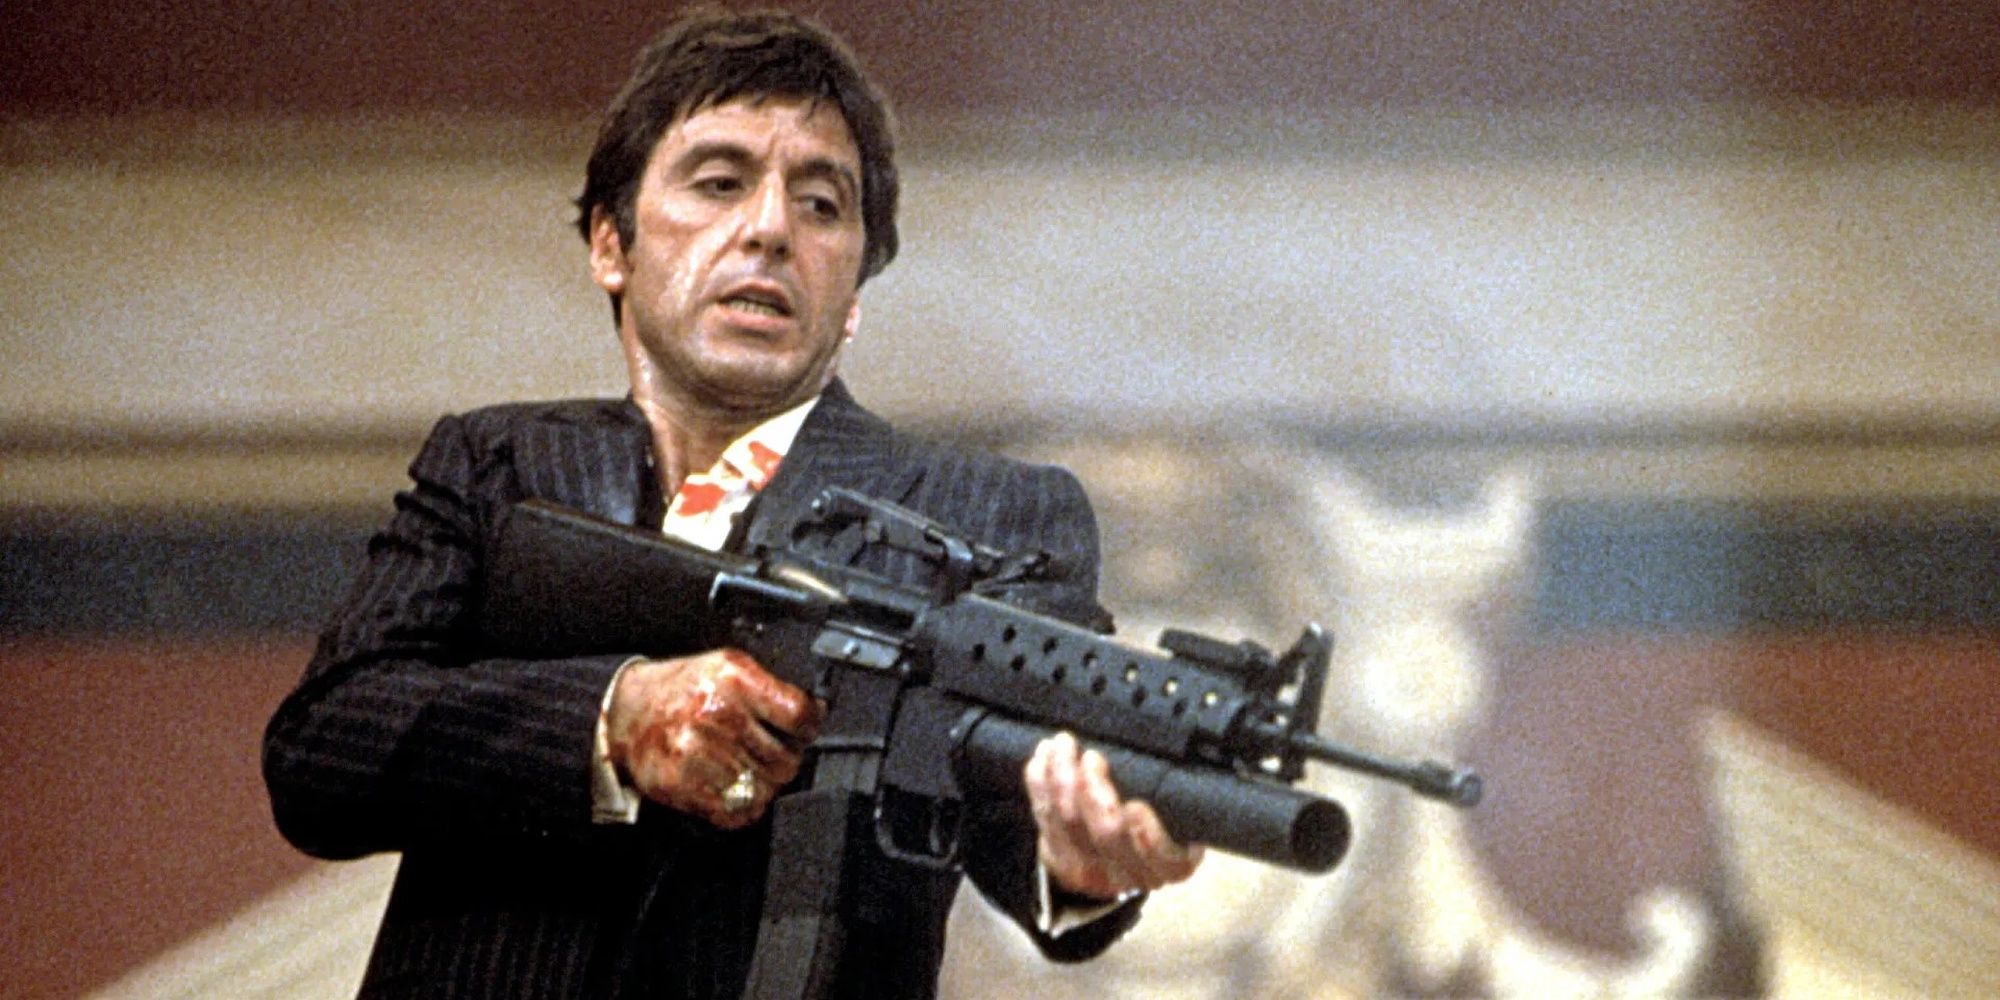 Al Pacino firing an assault rifle in Scarface